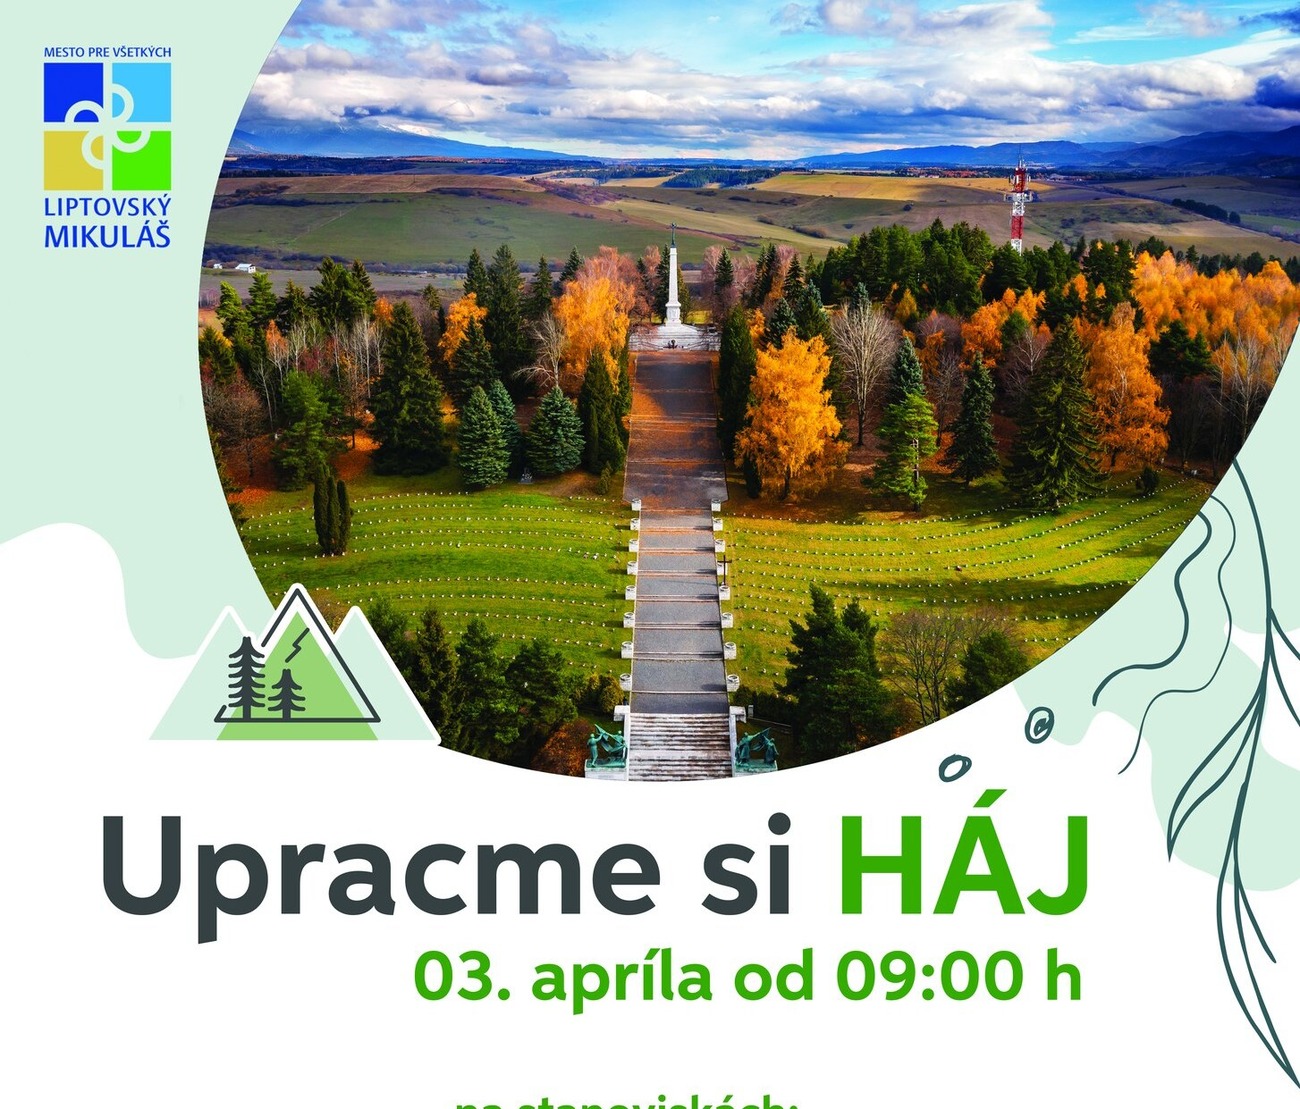 Veľké čistenie Hája v Liptovskom Mikuláši bude v stredu 3. apríla